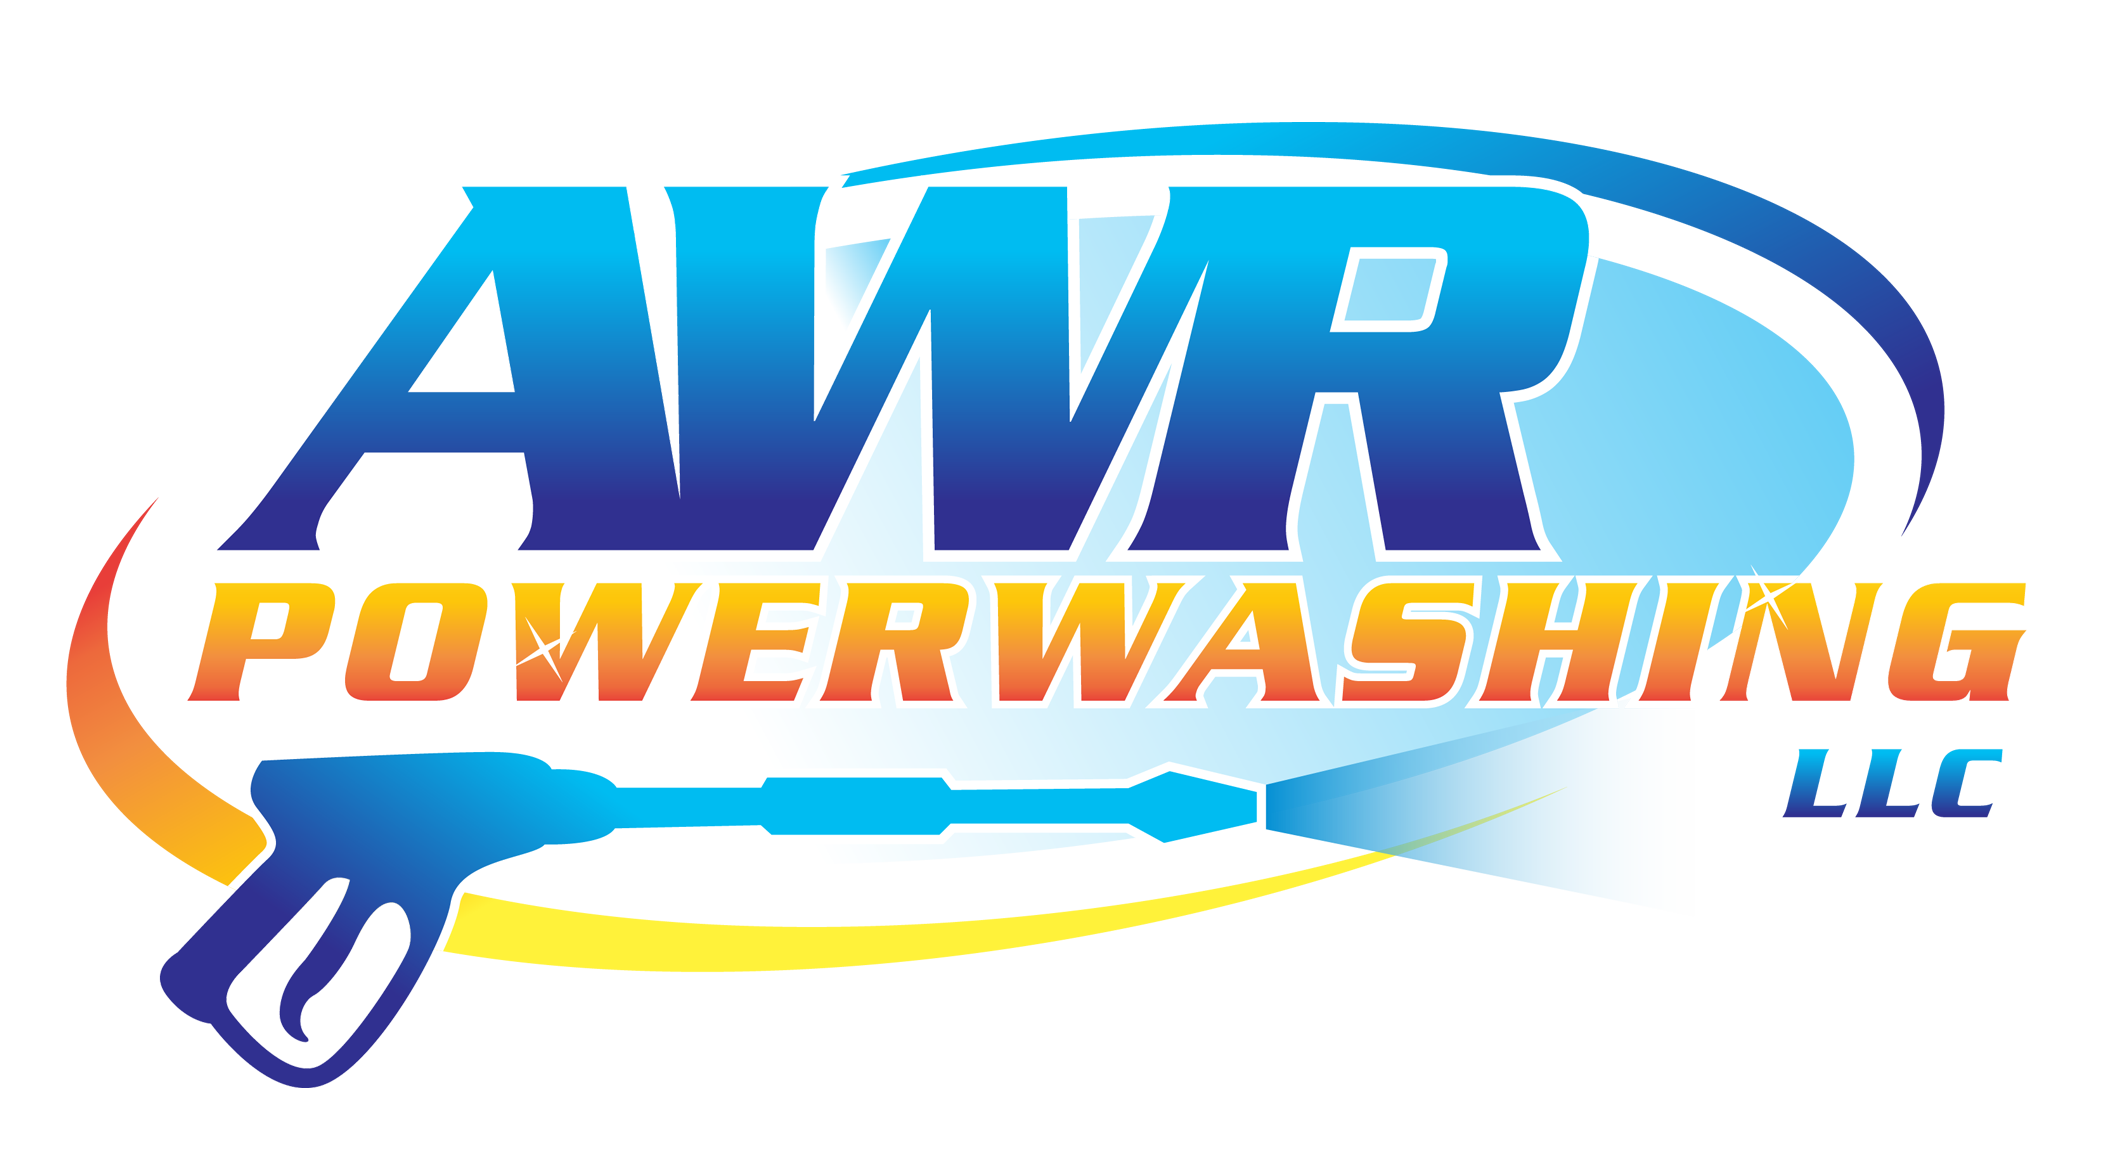 AWR Powerwashing LLC